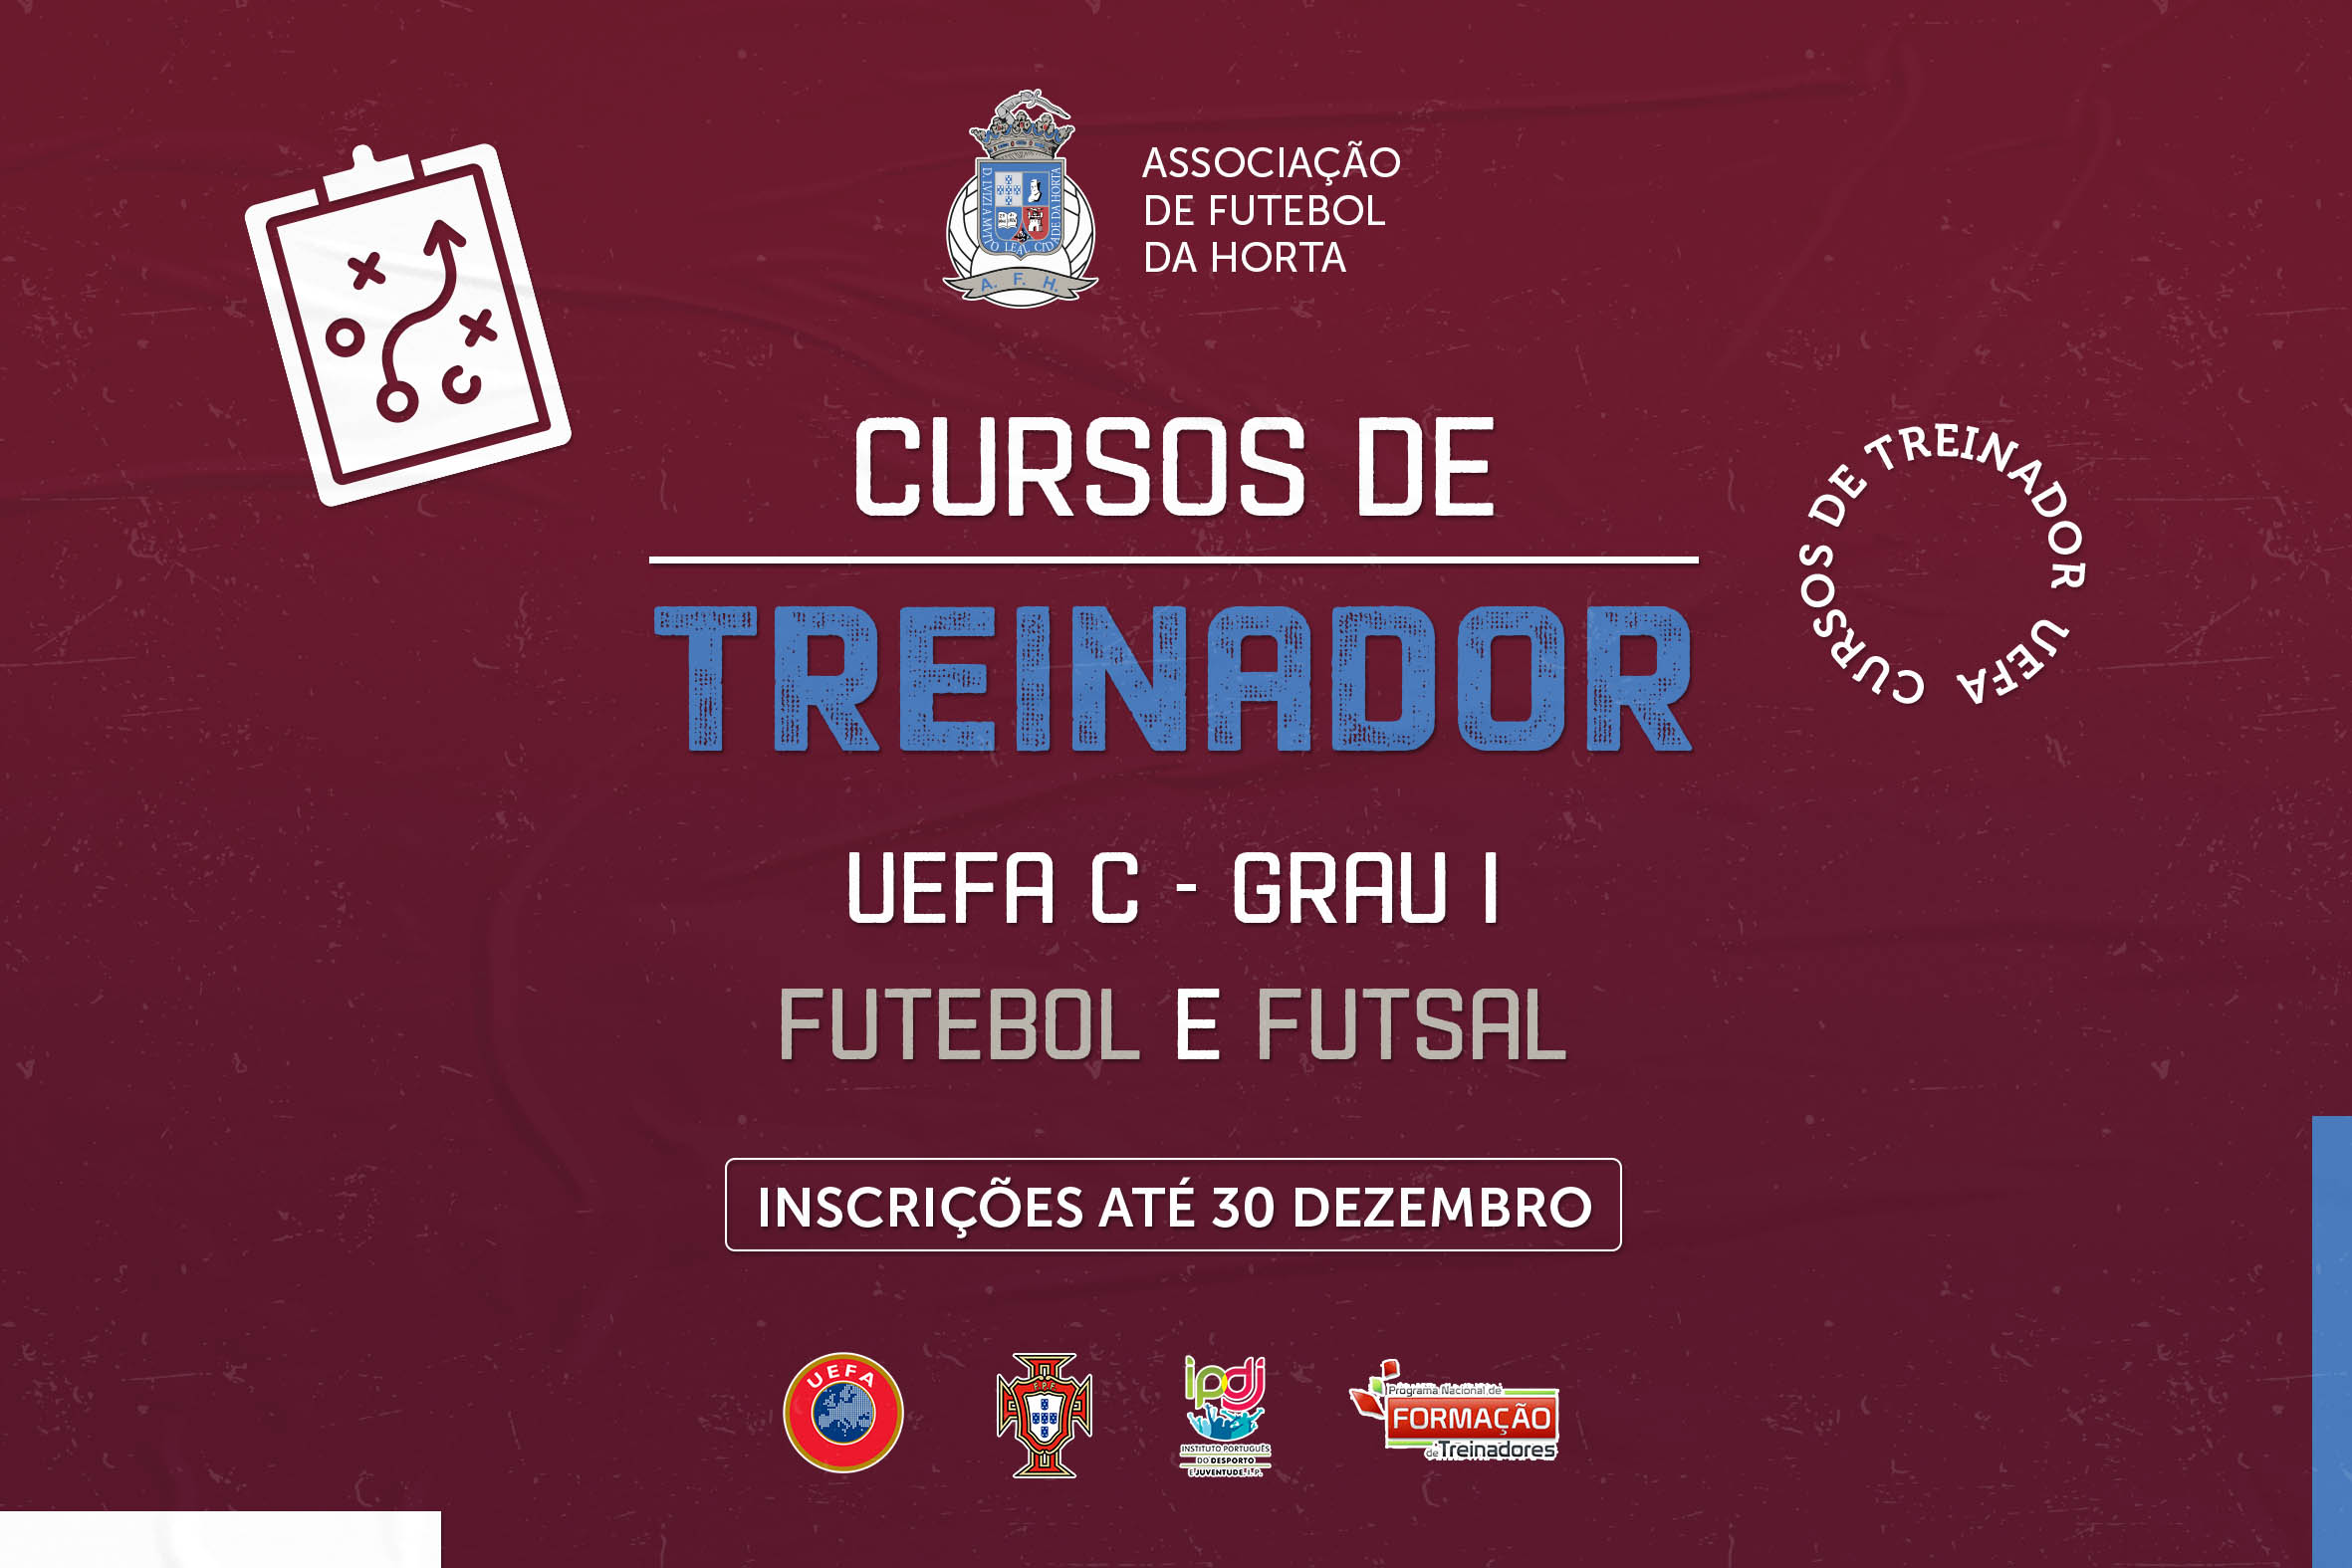 Cursos de Treinadores de Futebol e de Futsal UEFA C - Grau I com inscrições abertas